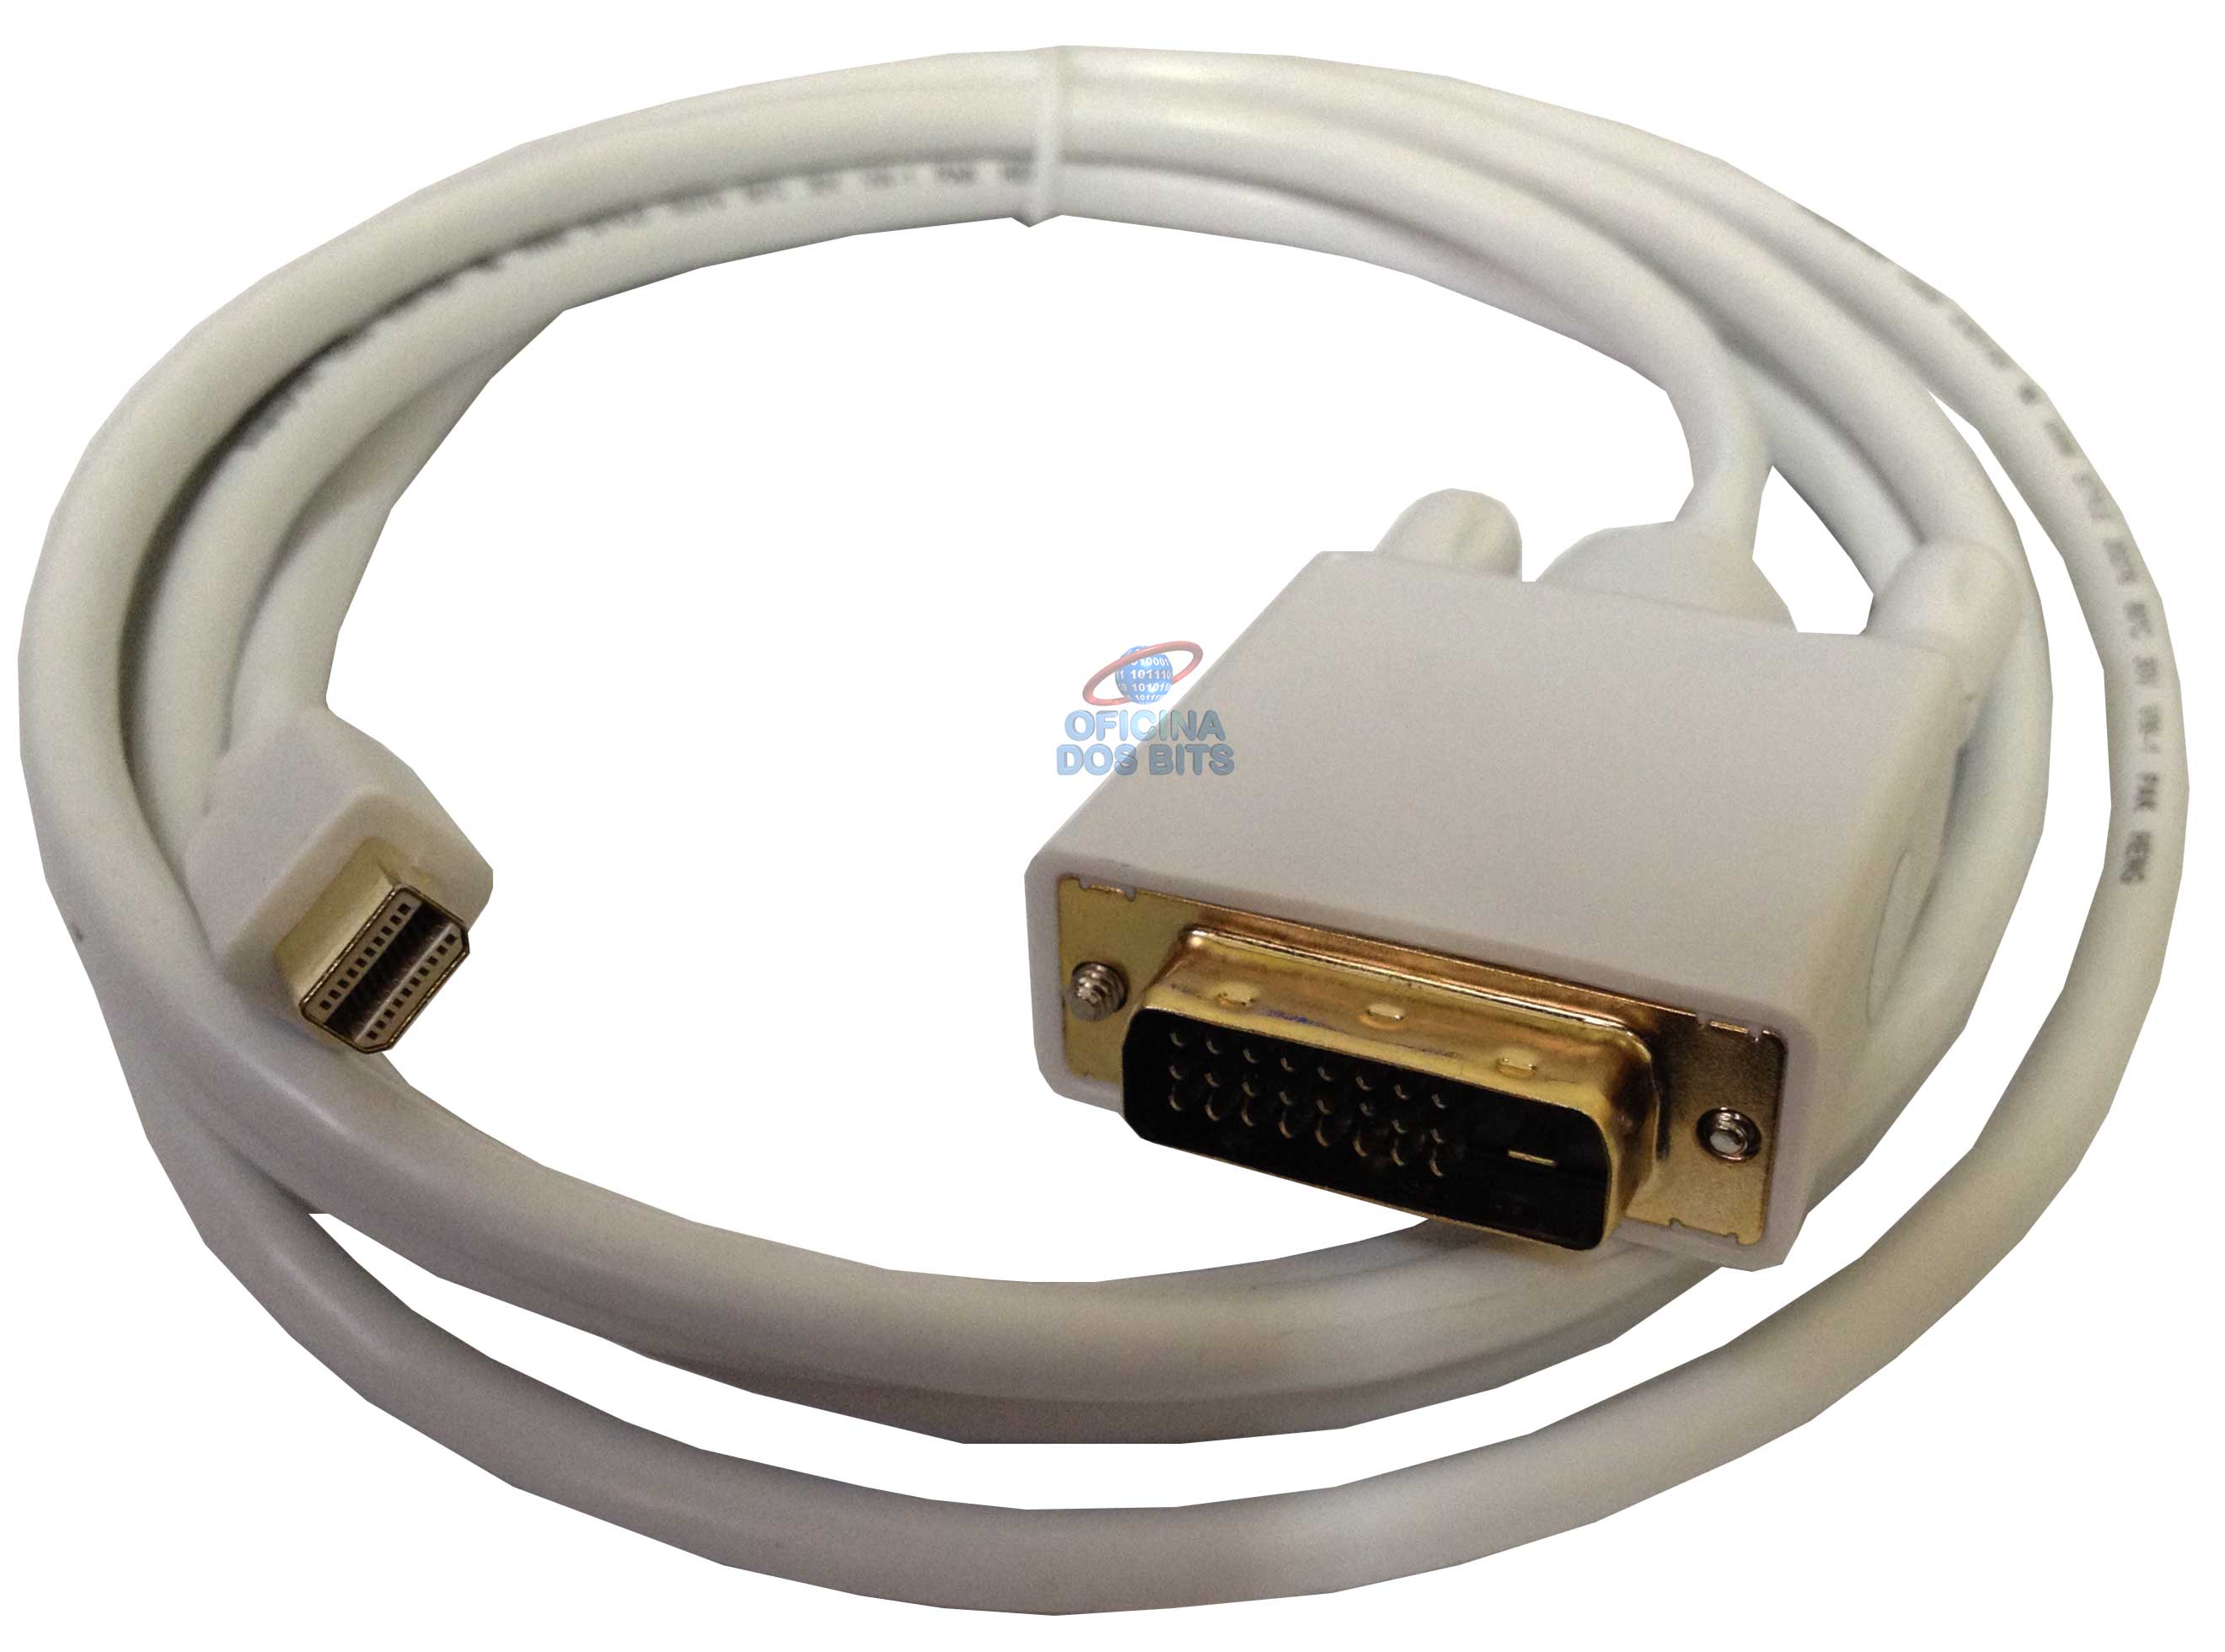 Cabo Conversor Mini DisplayPort para DVI-D - 1,8 metros - 24+1 Pinos (Mini DisplayPort M X DVI-D M)